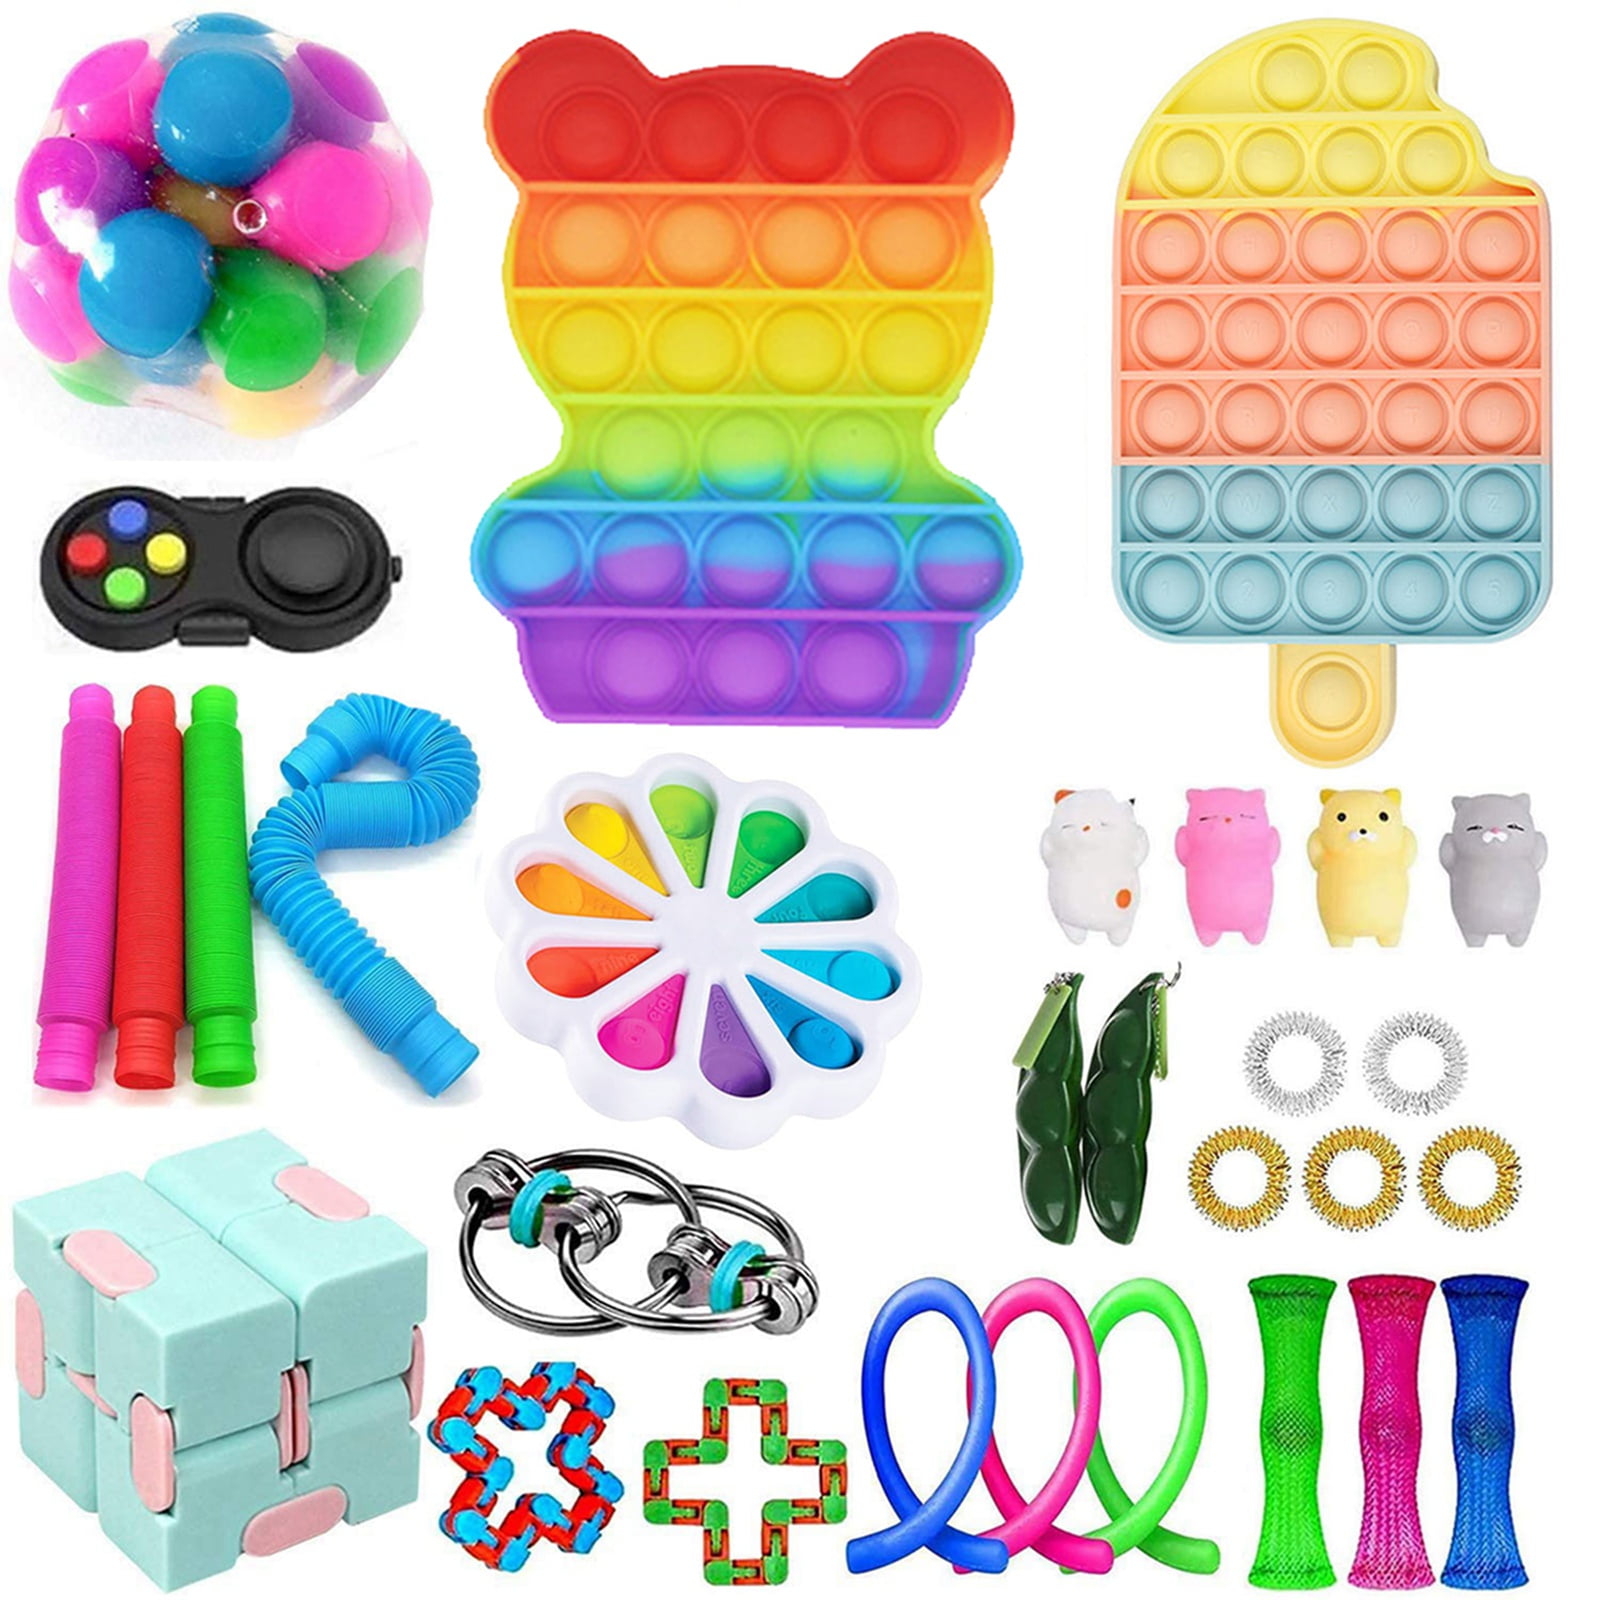 Details about   Sensory Tools Bundle Stress Relief Kids Adults 1-25Pcs Push Fidget Toys Set Hot 